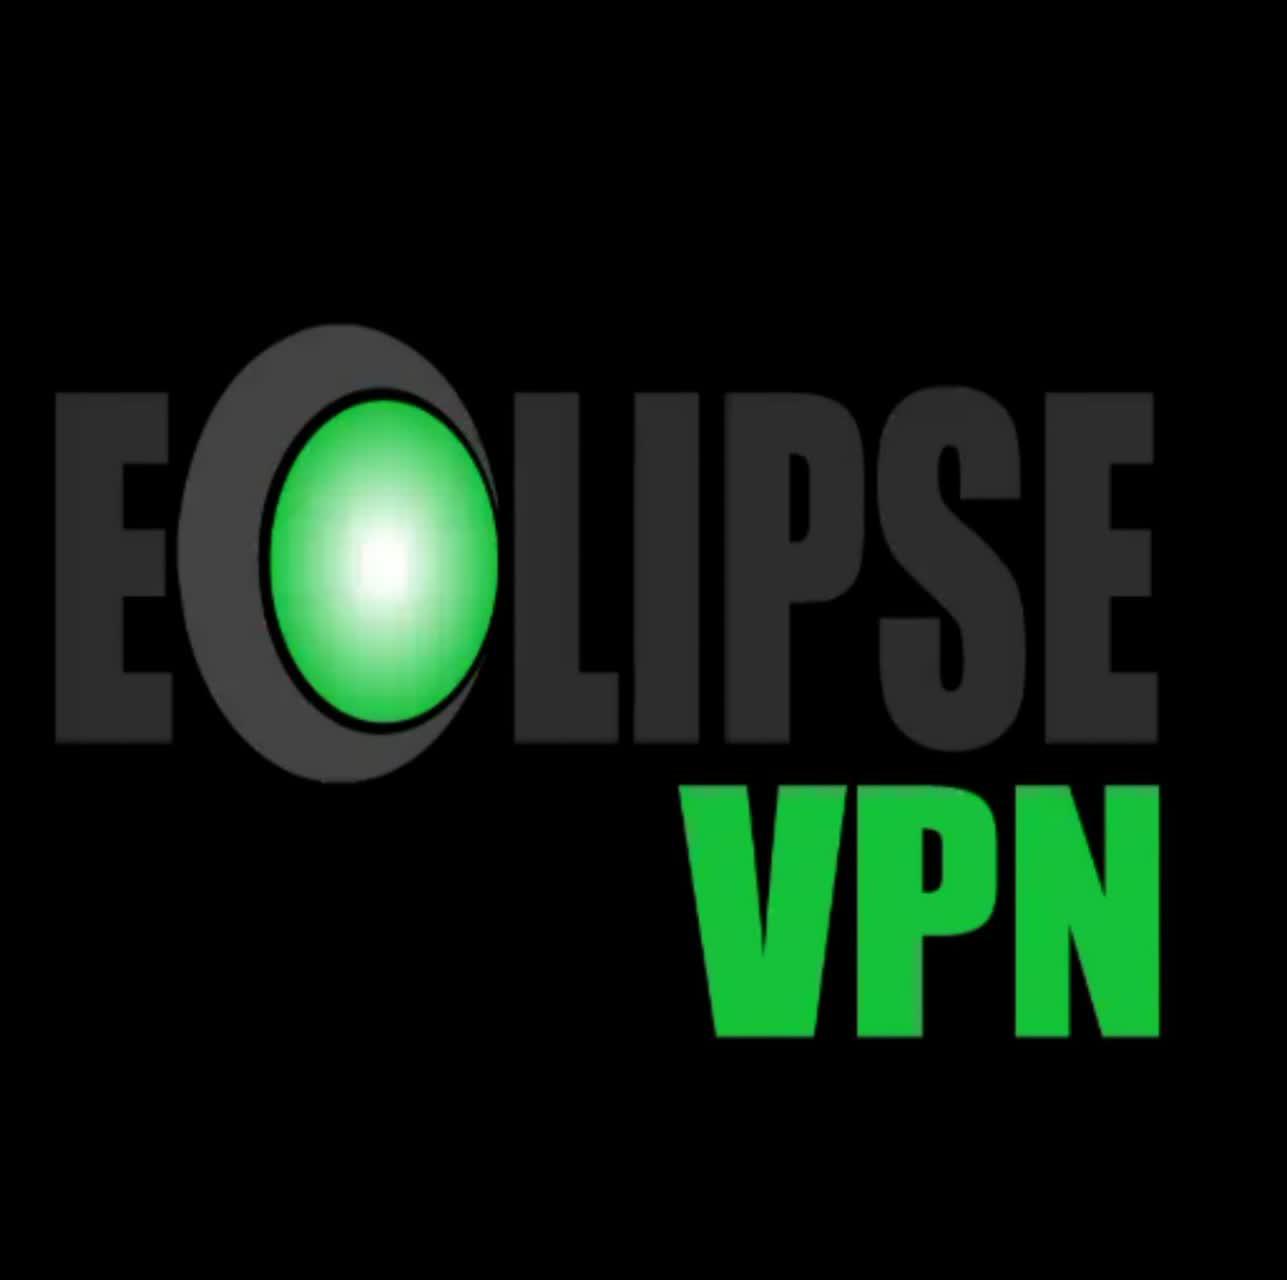 دانلود فیلتر شکن Eclipse VPN برای اندروید